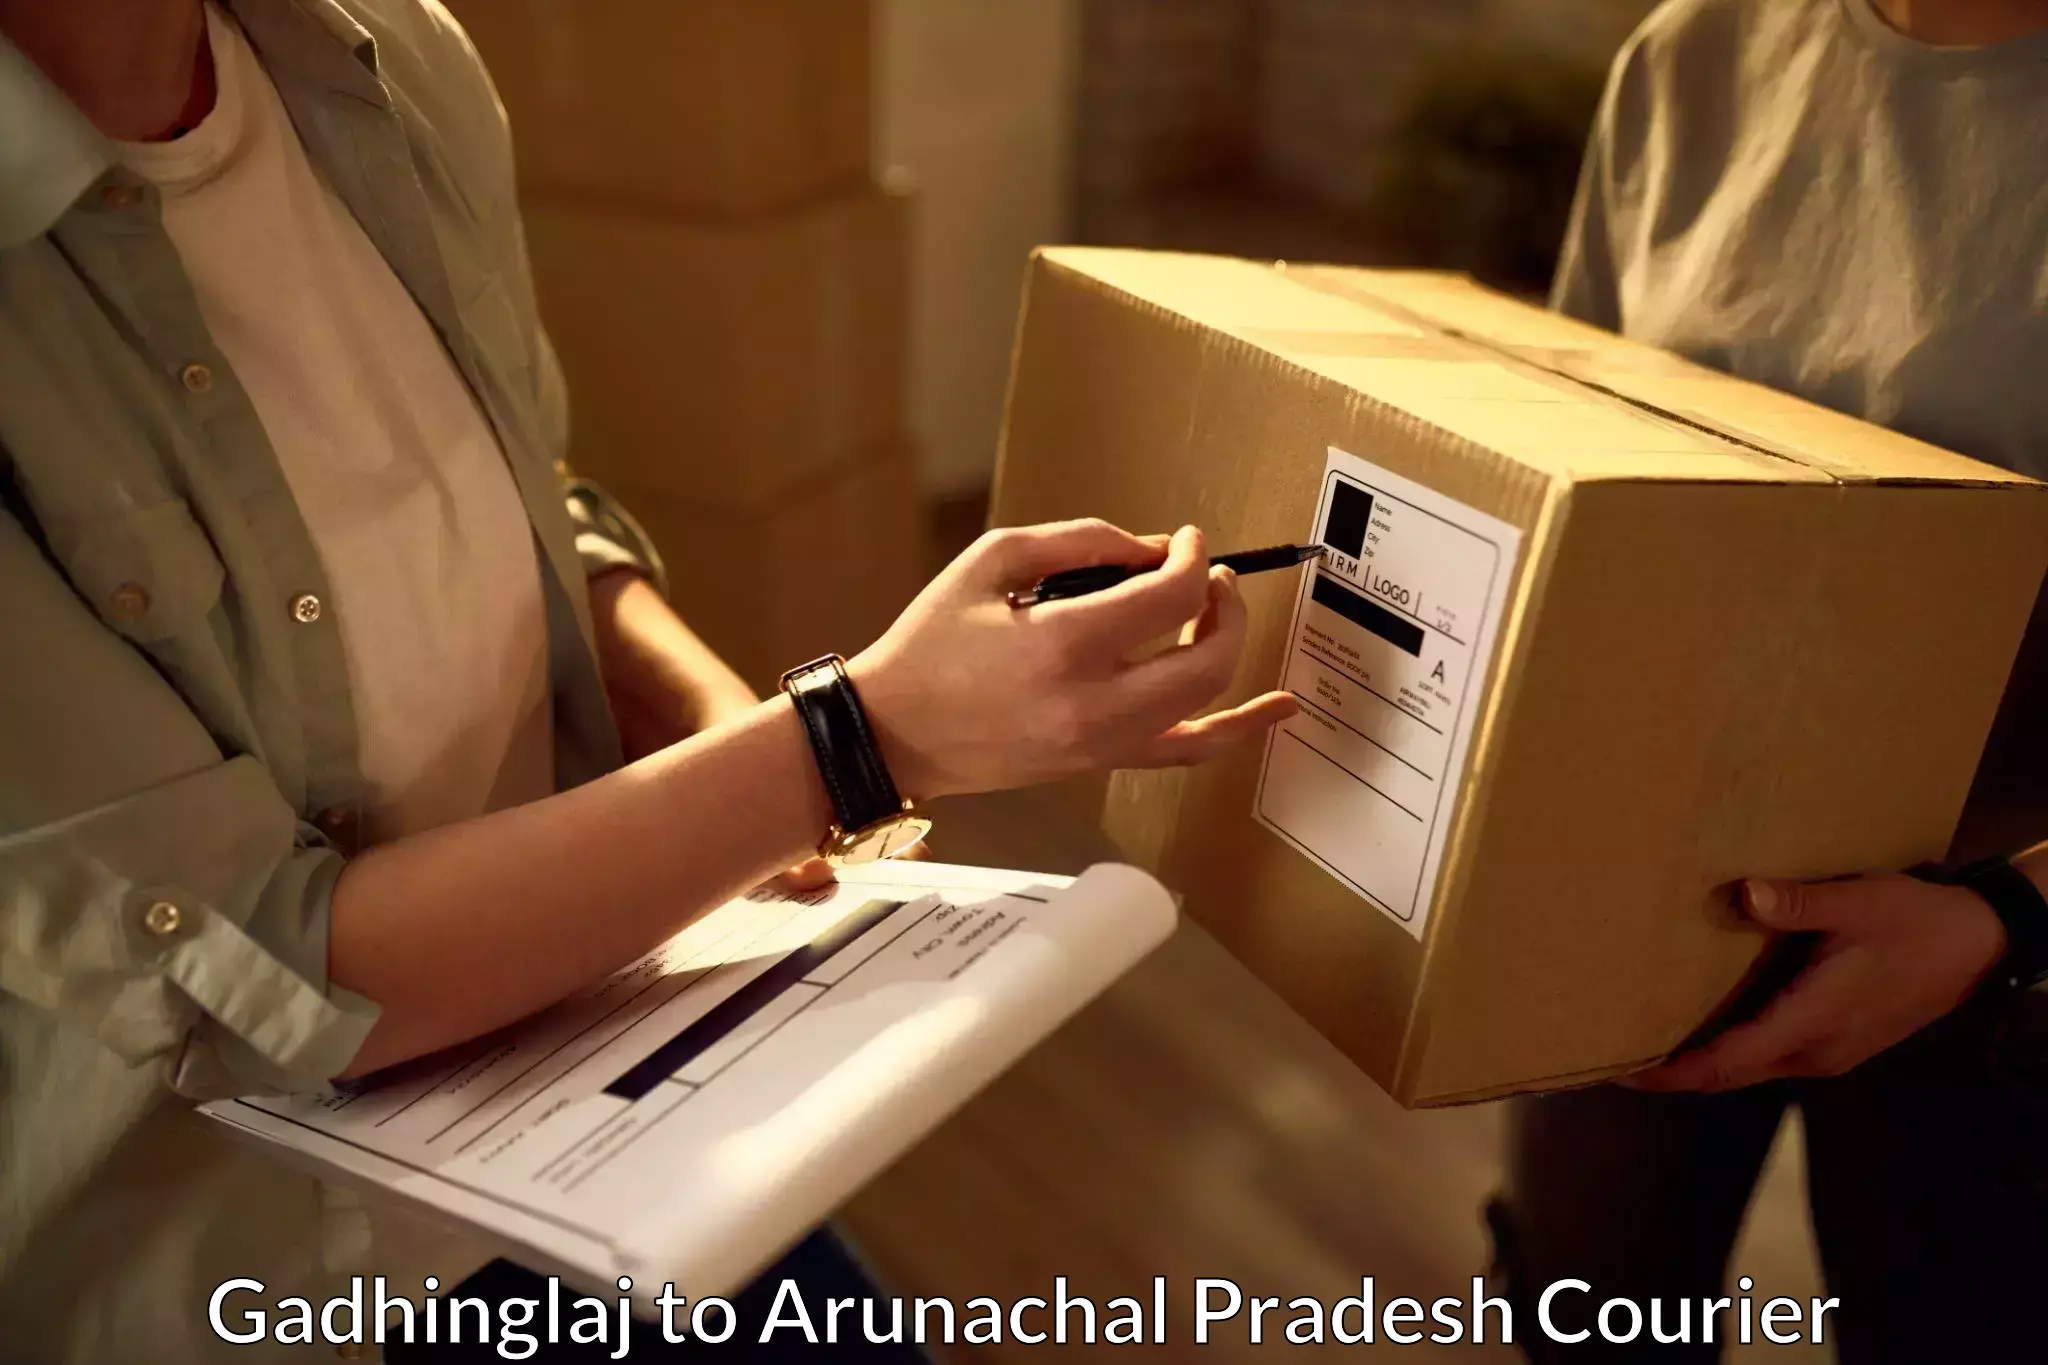 Courier service innovation Gadhinglaj to Arunachal Pradesh